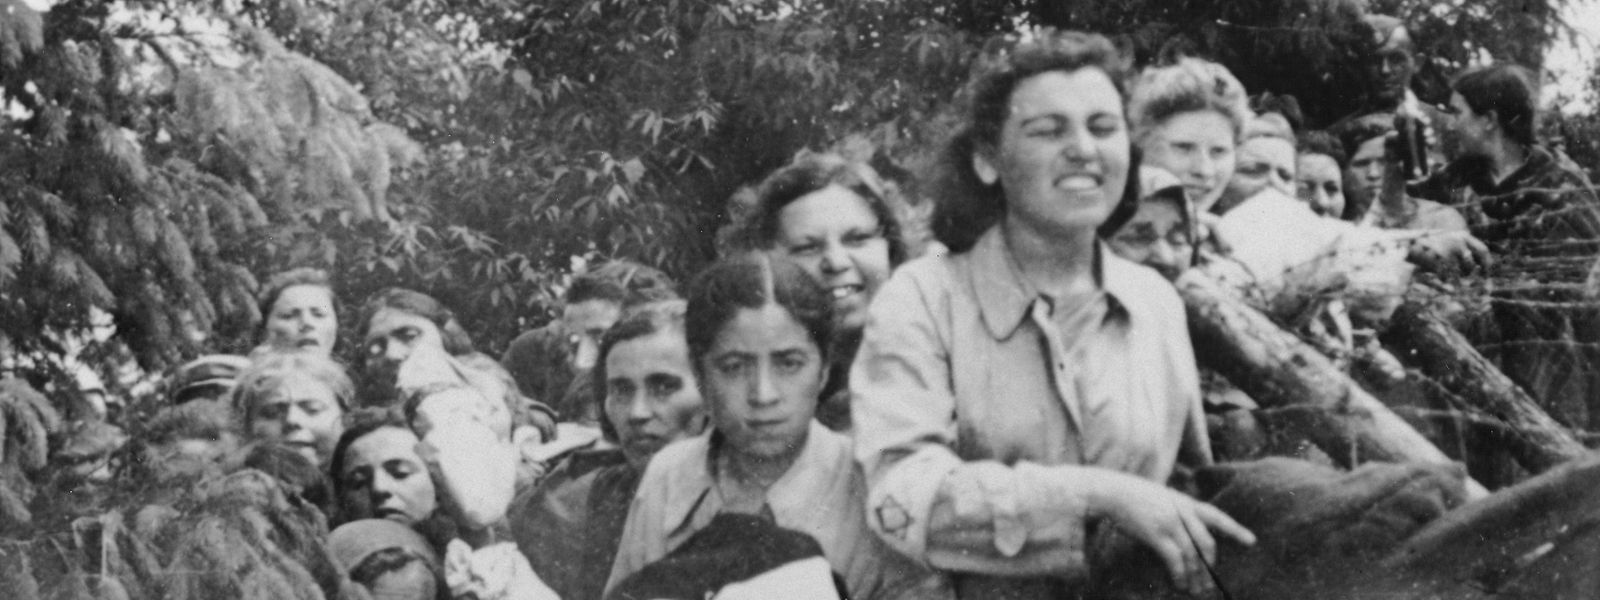 Am 17. August 1942 wurde von Einheiten des Reserve-Polizeibataillons 101, dem auch 14 Luxemburger angehörten, im polnischen Dorf Łomazy ein Massaker an der jüdischen Bevölkerung verübt. An einem Tag sind hier 1.700 Frauen, Kinder, Männer, Alte und Kranke erschossen worden. Auf dem Bild sieht man Frauen, die in den Wald zur Exekution getrieben werden.